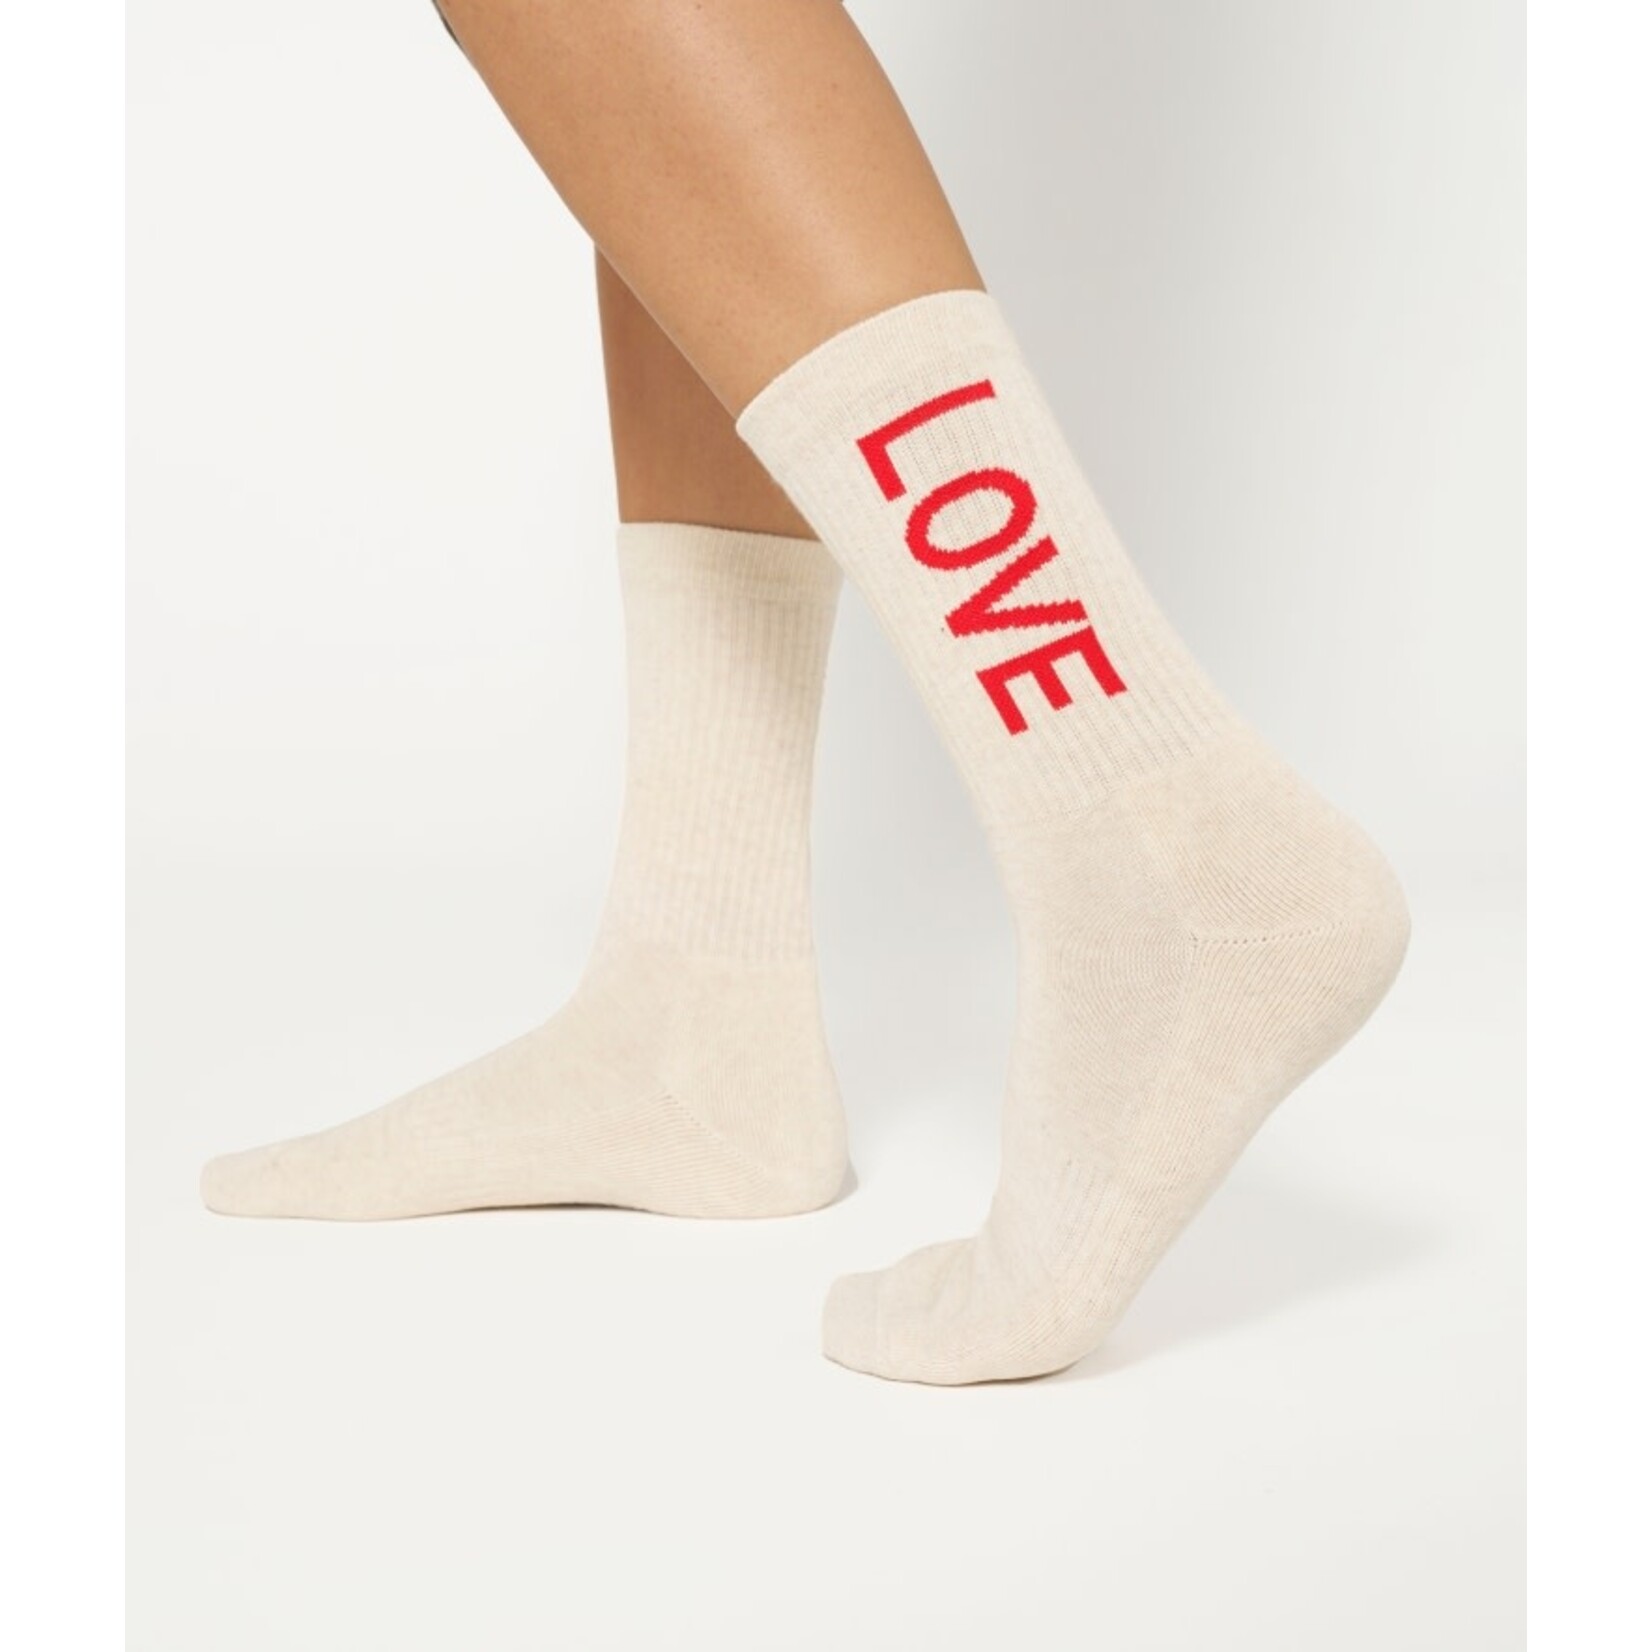 10Days Socks love